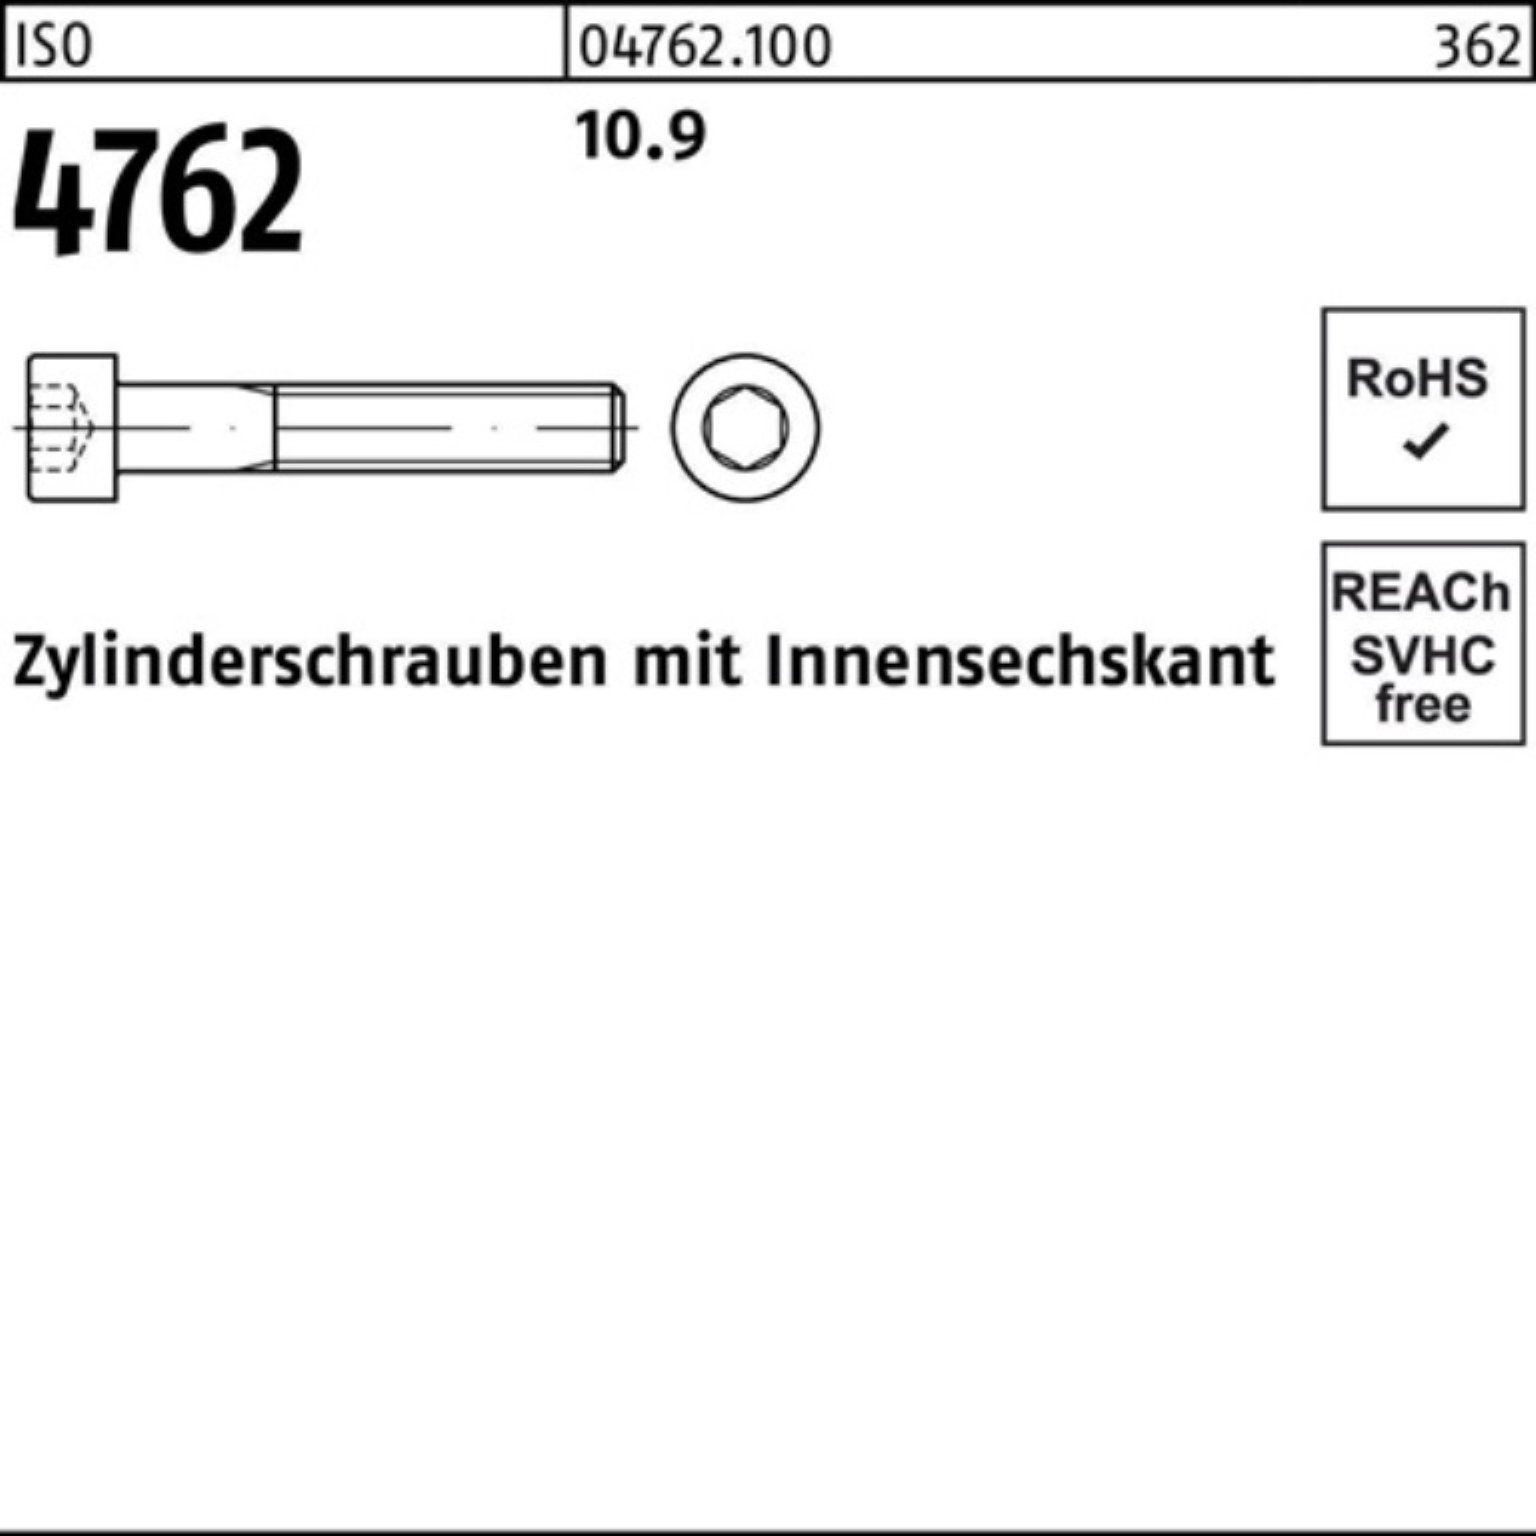 Zylinderschraube Innen-6kt Stück 500er M4x Pack 500 Zylinderschraube 4762 10.9 ISO Reyher 20